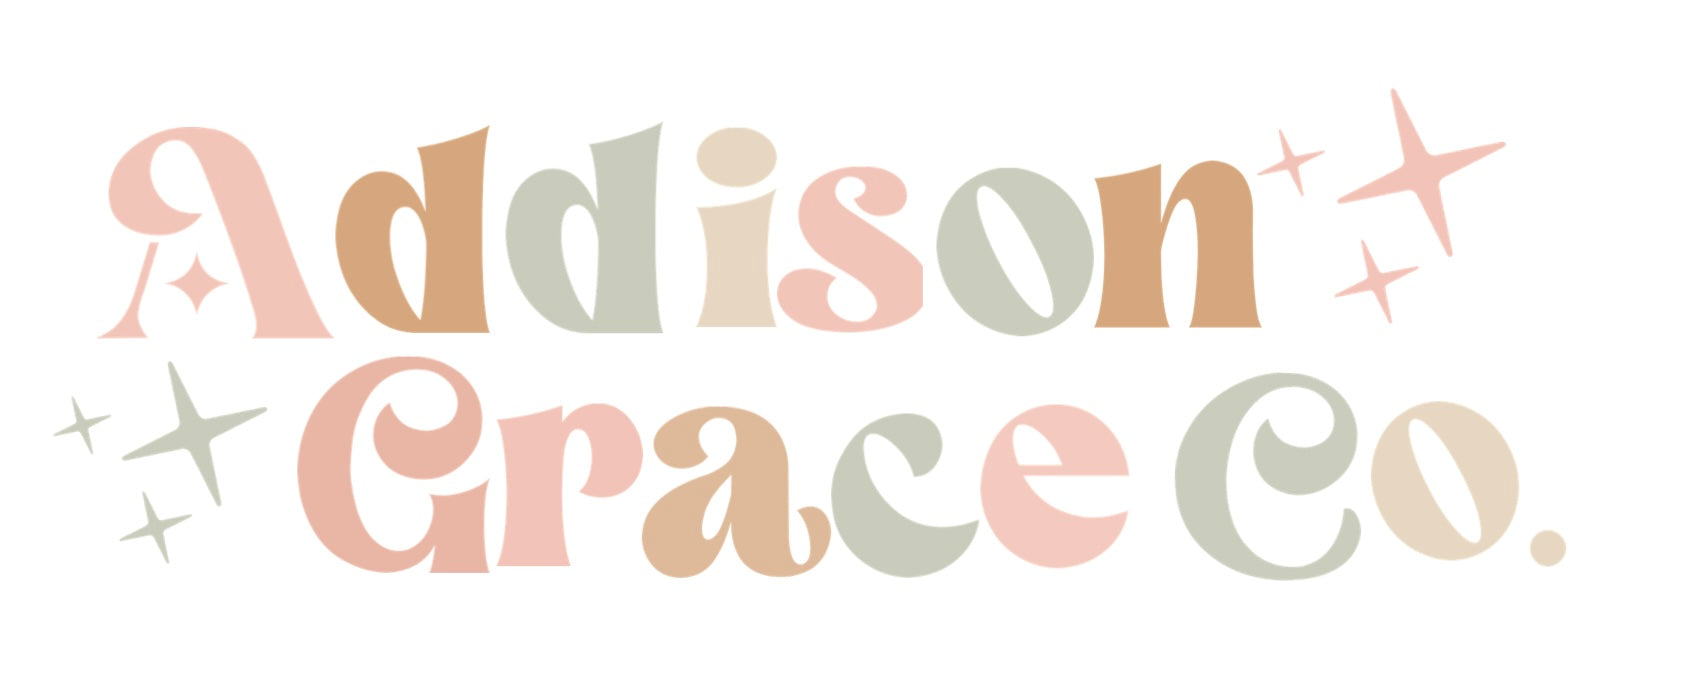 Addison Grace Co